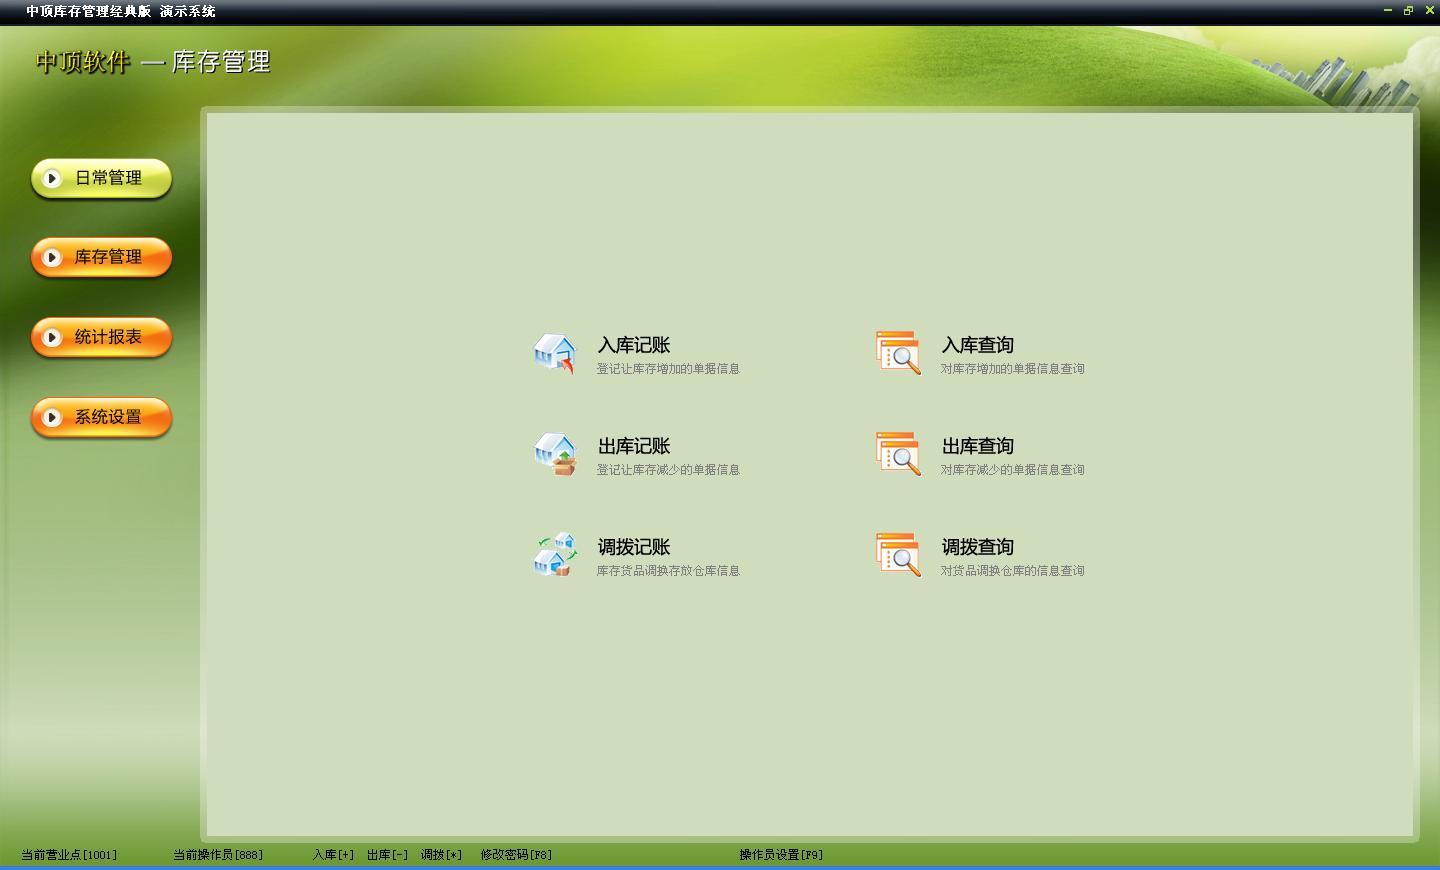 中顶库存管理系统_v7.7_32位中文共享软件(27.21 MB)